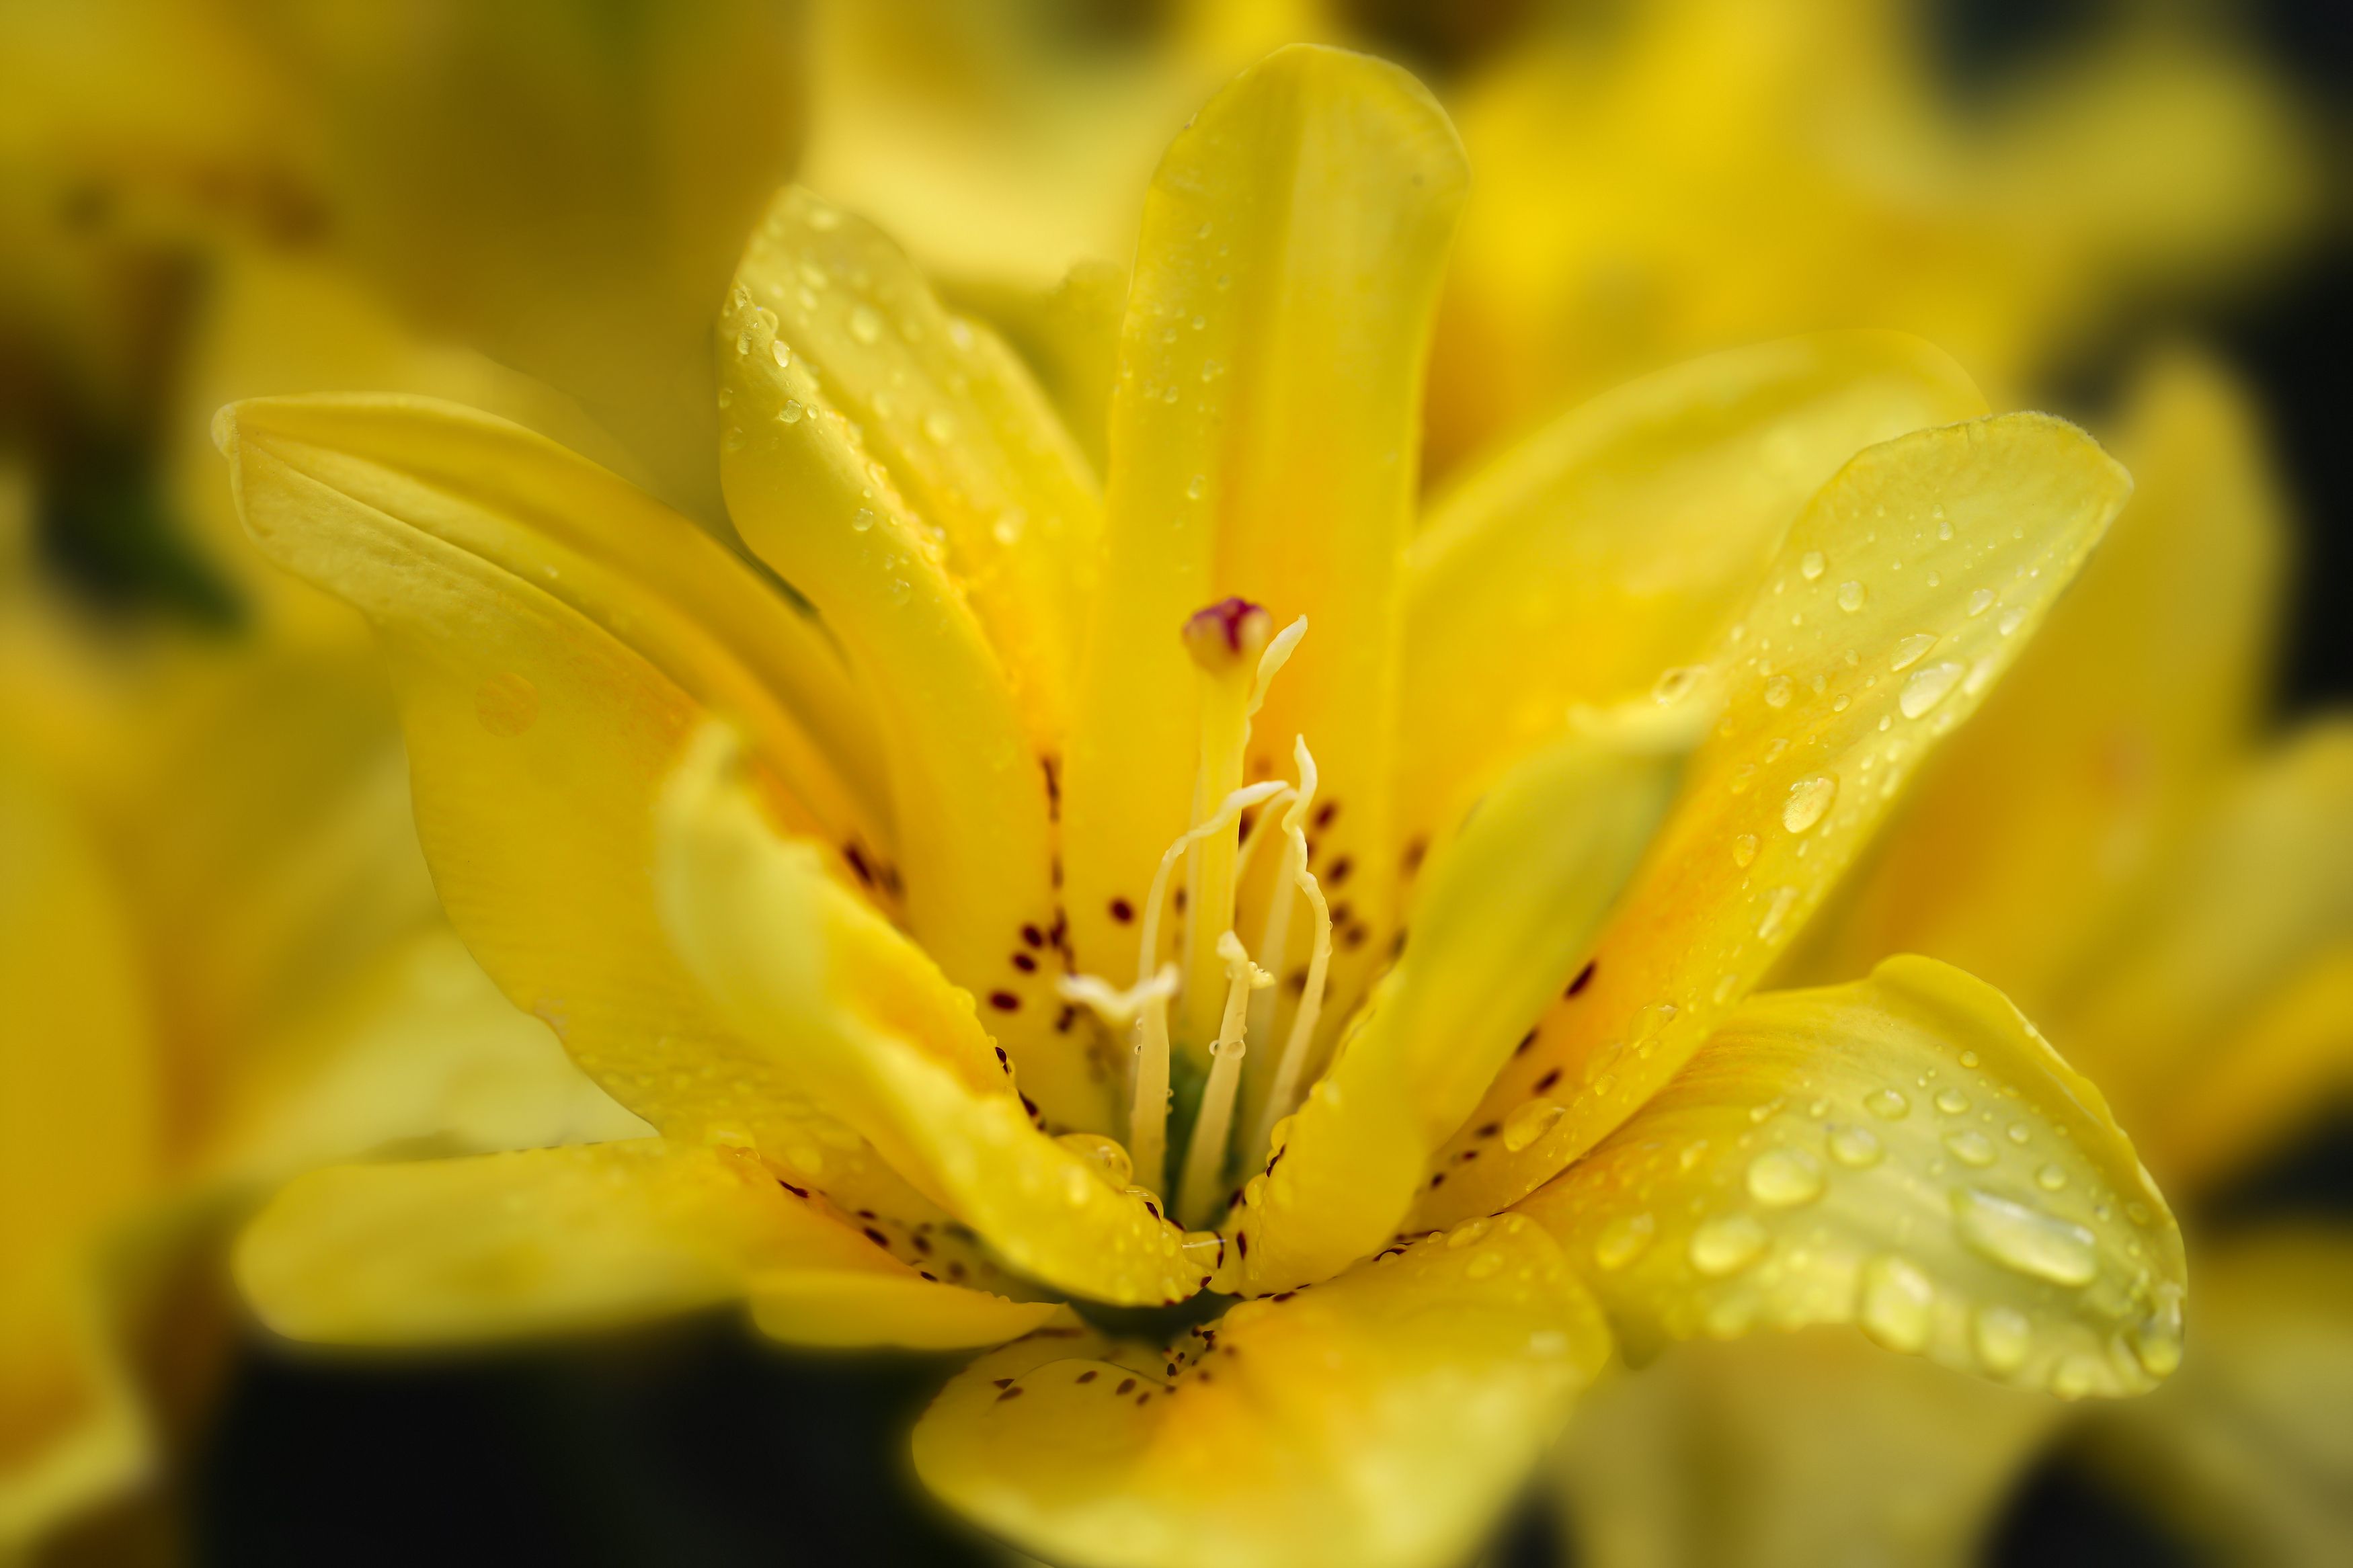 yellow rose, flowers, garden, macro, close-up, nature, water drops, DZINTRA REGINA JANSONE